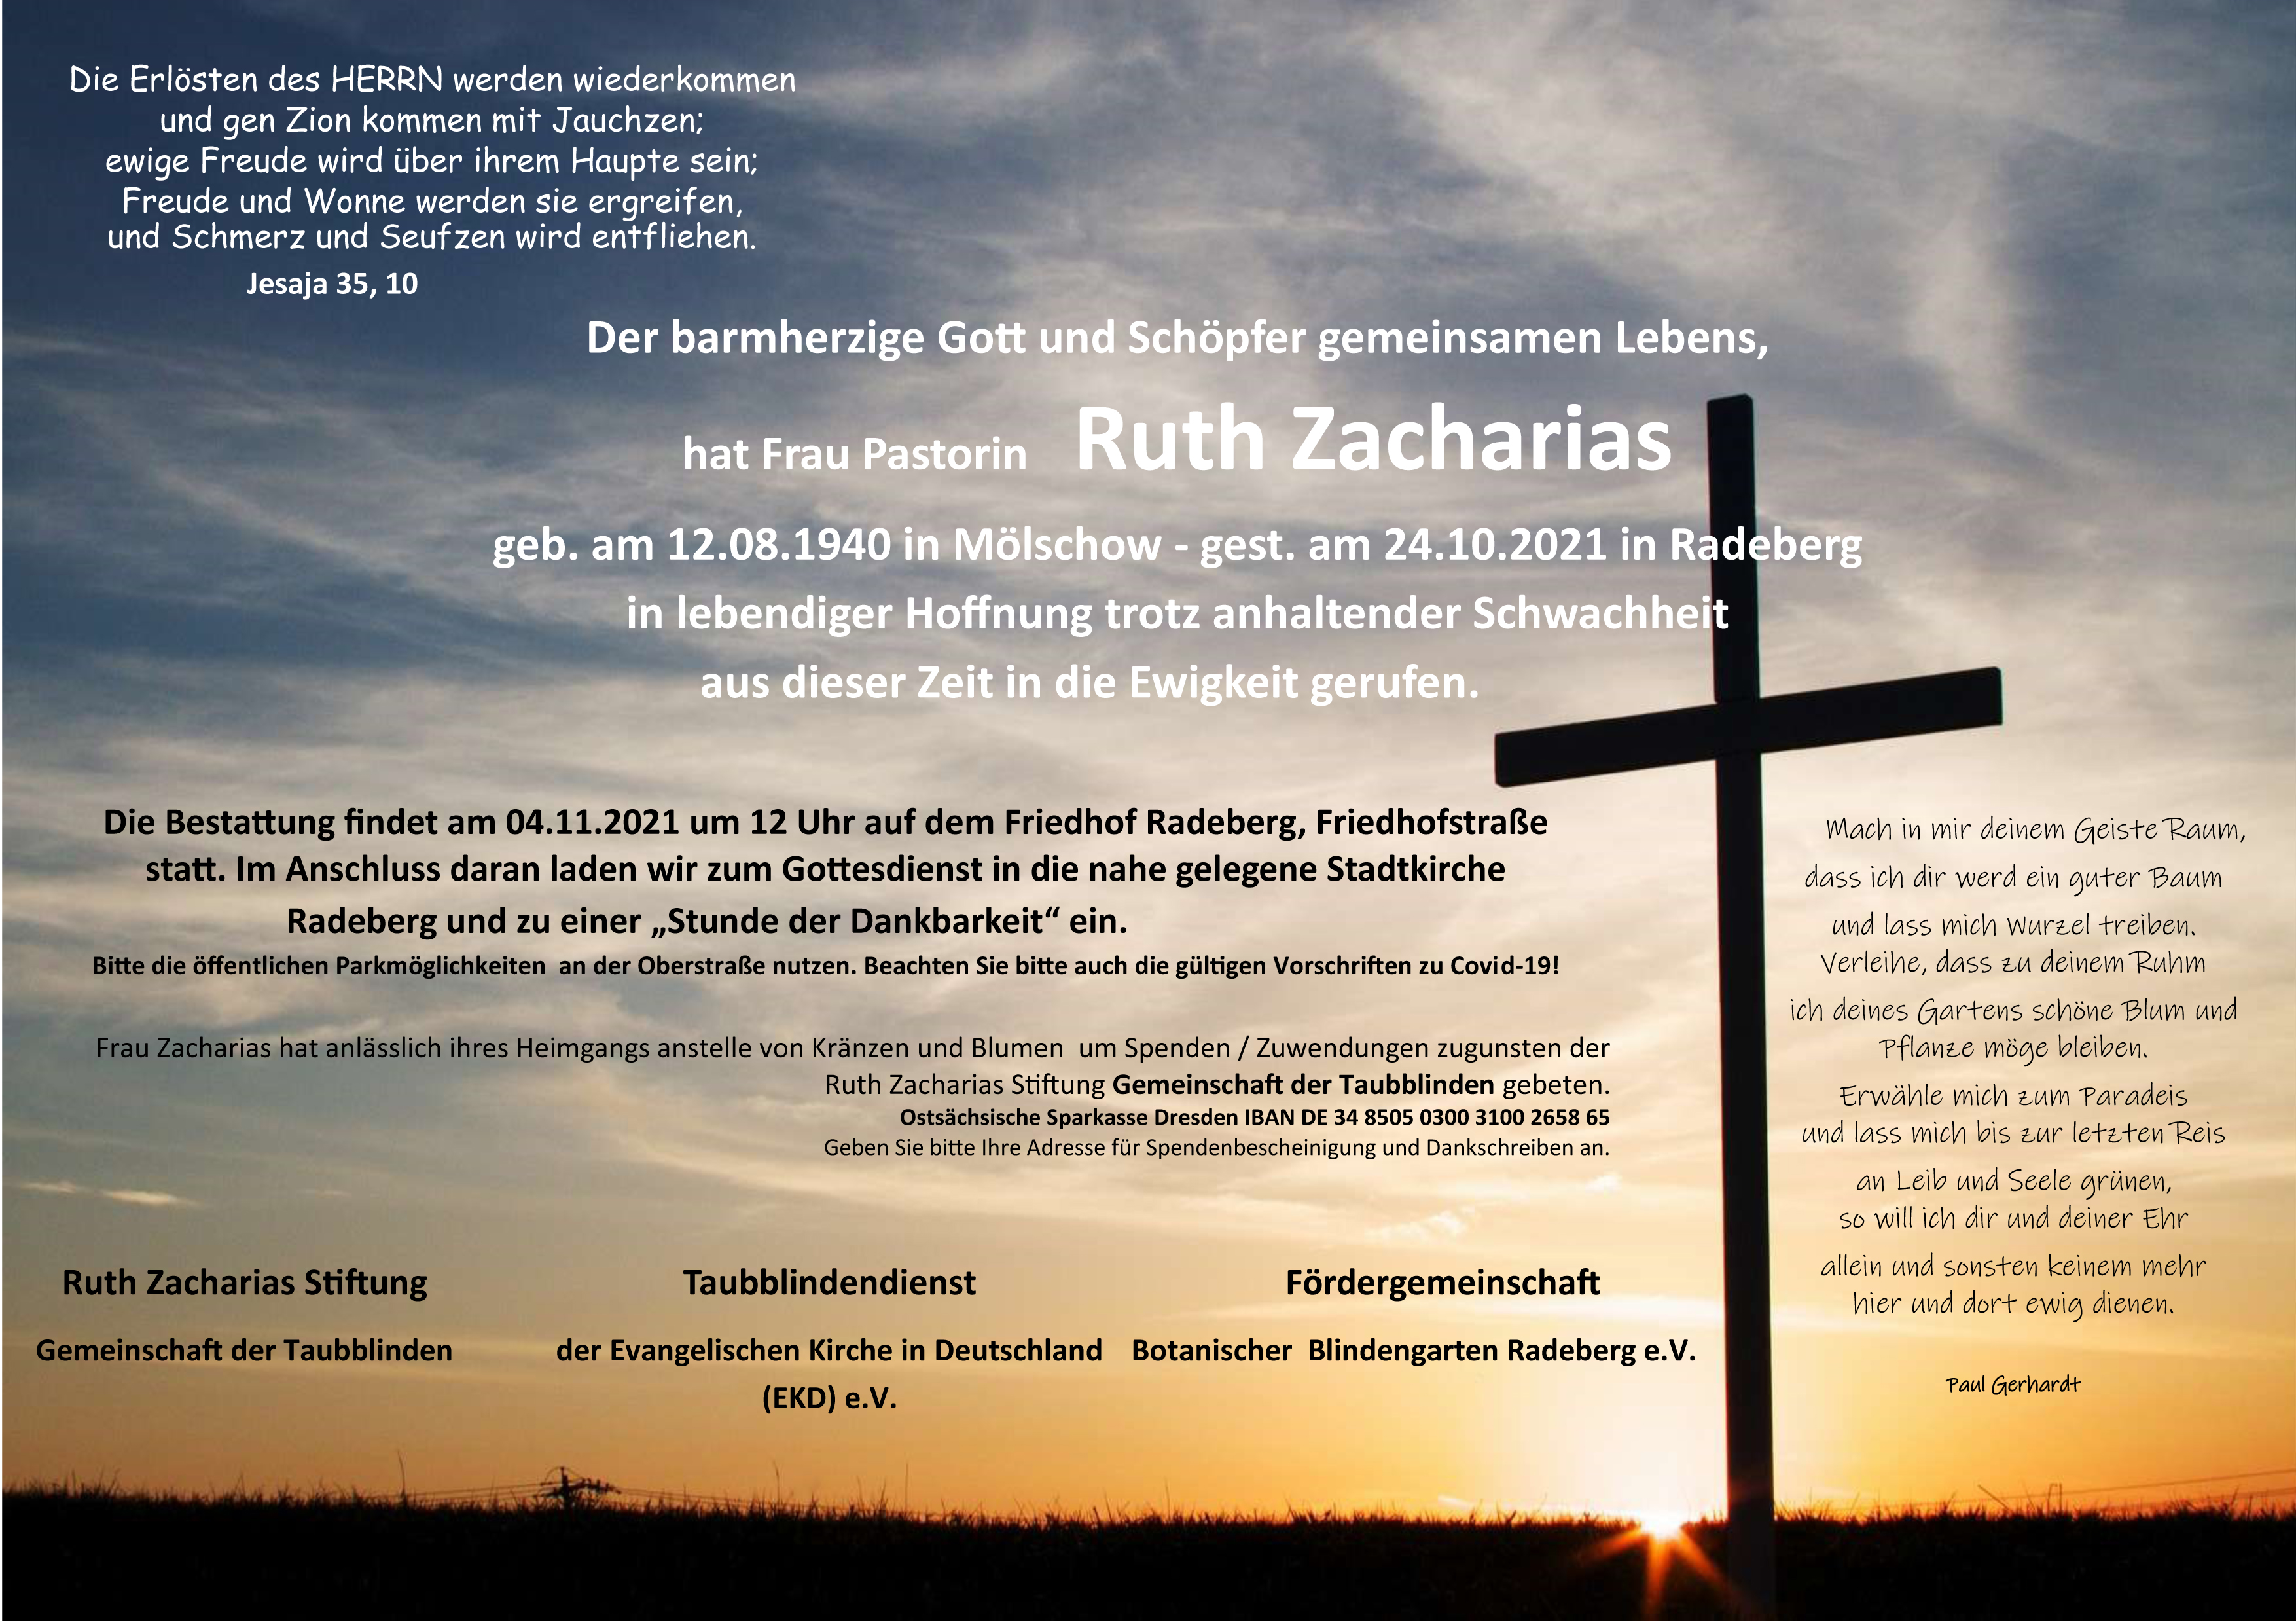 Traueranzeige Ruth Zacharias groß